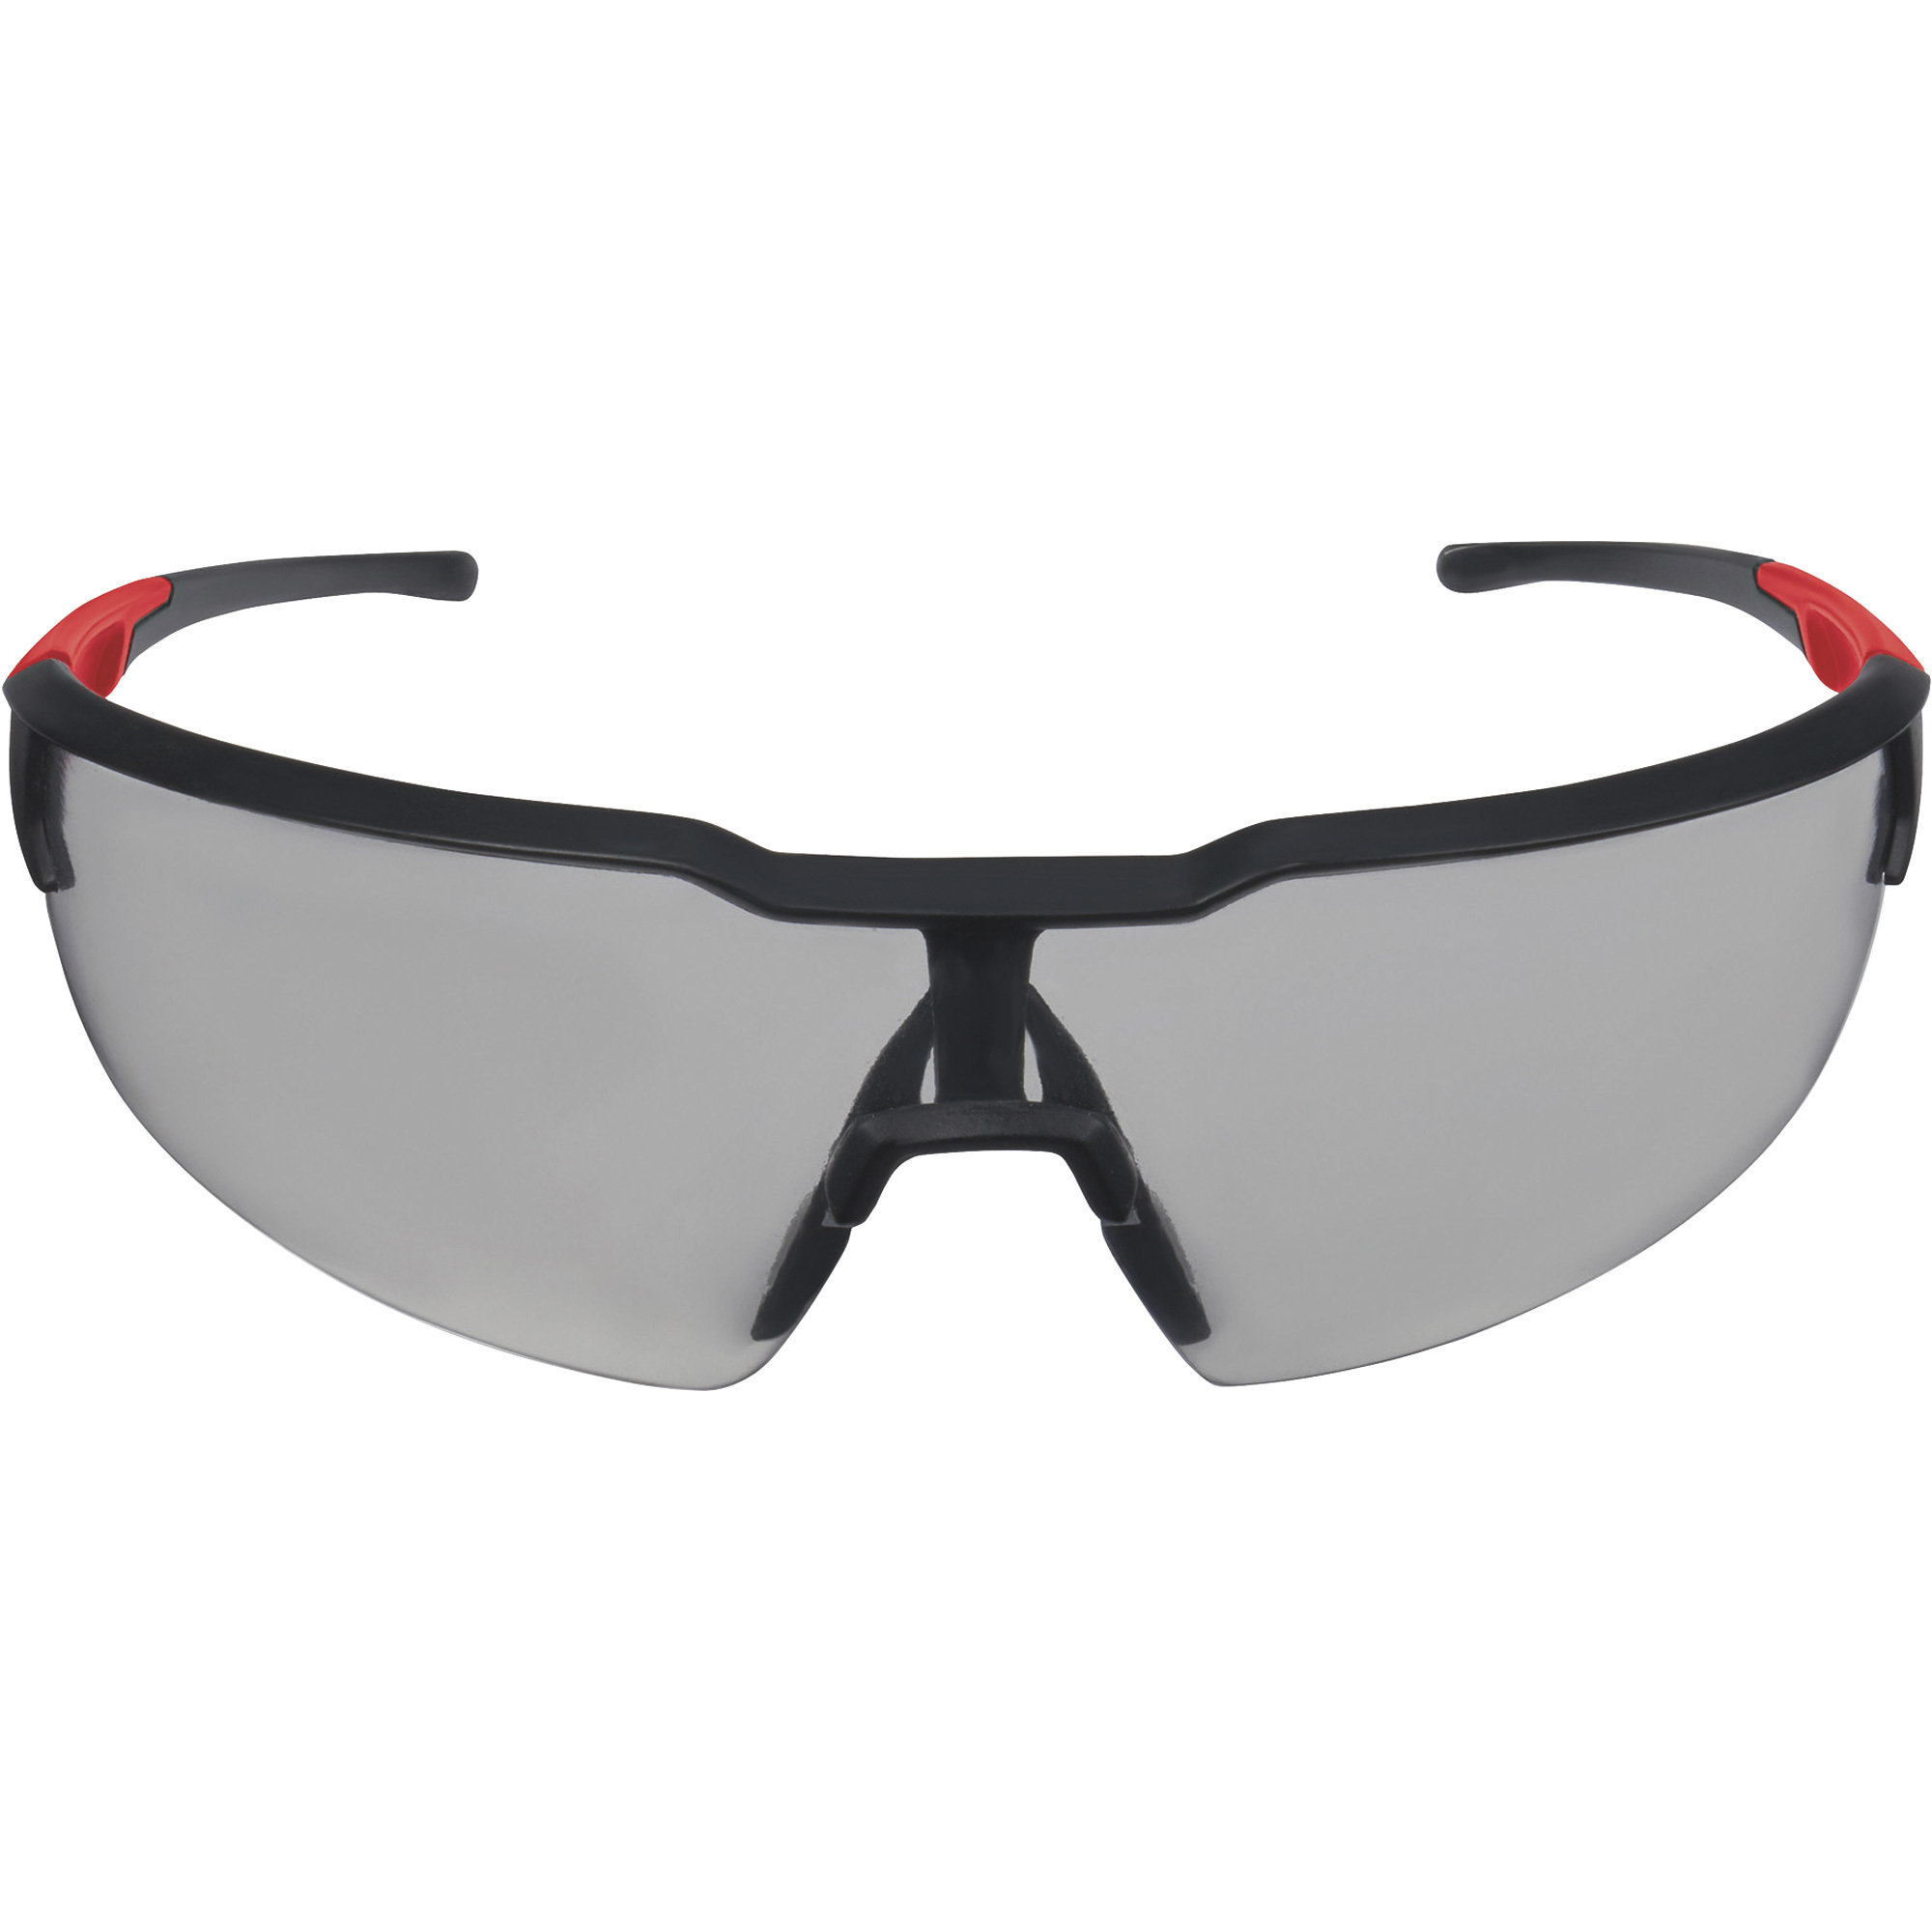 Milwaukee Fog-Free Safety Glasses, Yellow Lens, Black/Red Frame, Model 48-73-2102